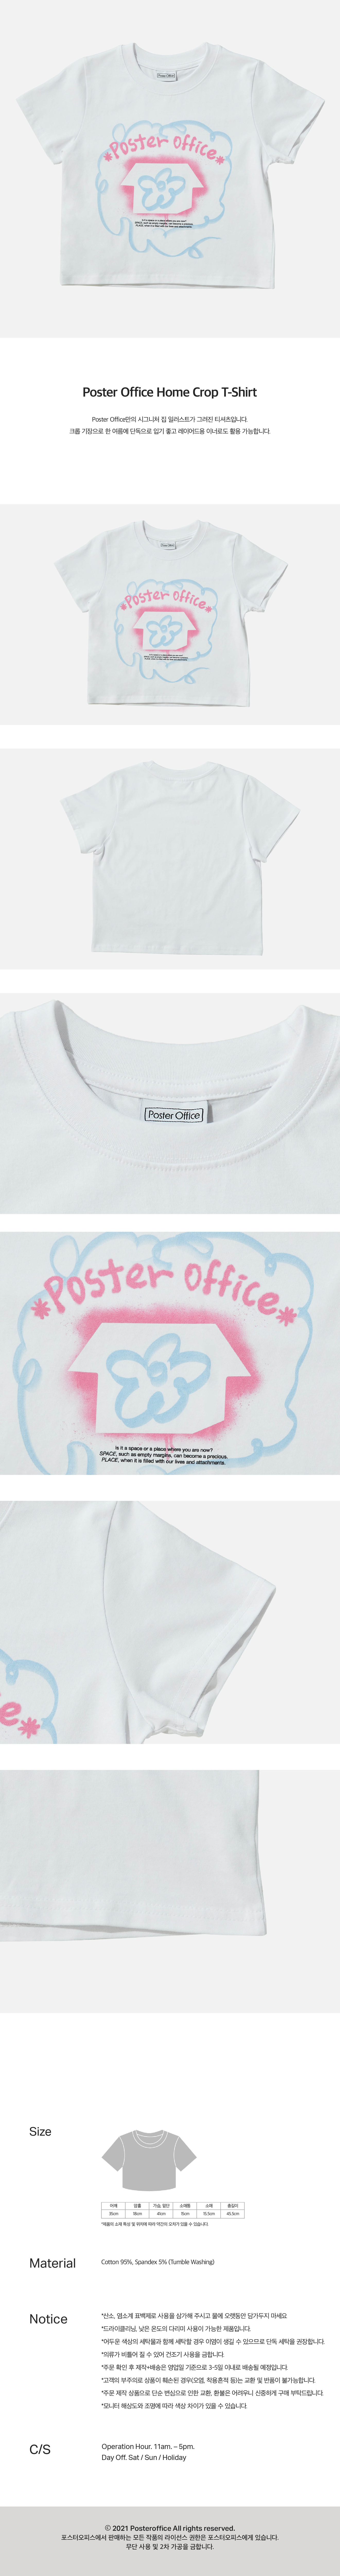 Poster Office Home Crop T-Shirt